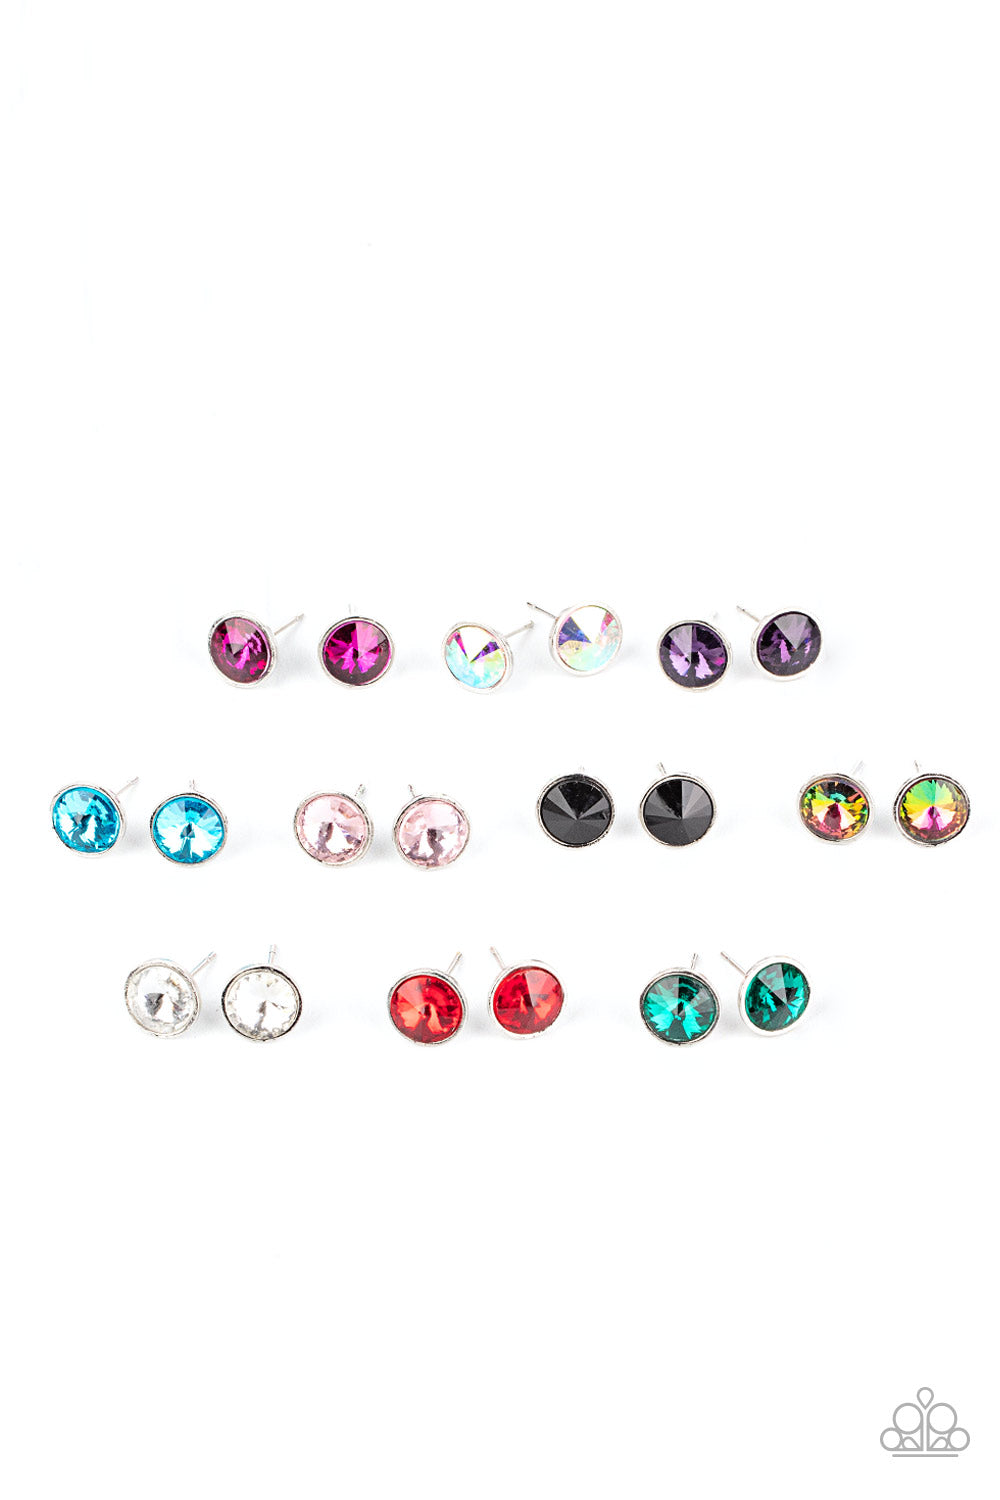 Starlet Shimmer Large Rhinestone Stud Earring Pack♥ Starlet Shimmer Earrings♥ Paparazzi ♥